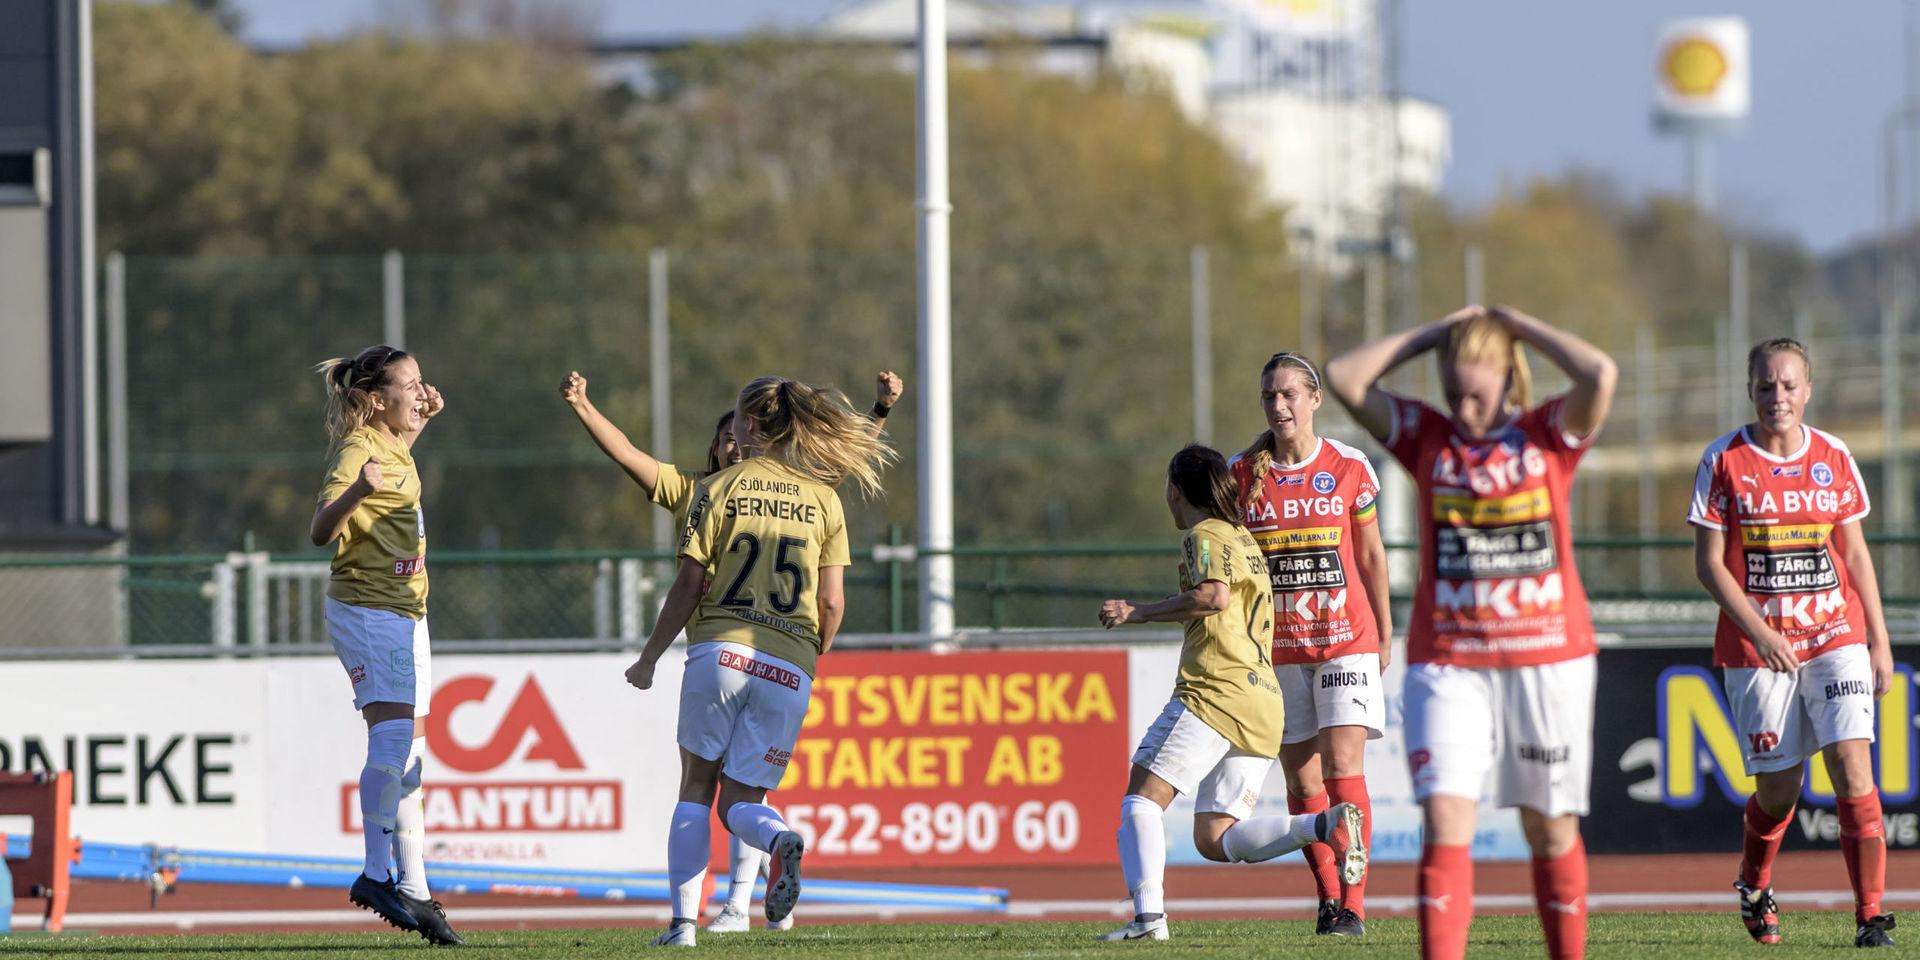 Rössö vann division 1 norra Götaland förra året men förlorade kvalet till elitettan. 